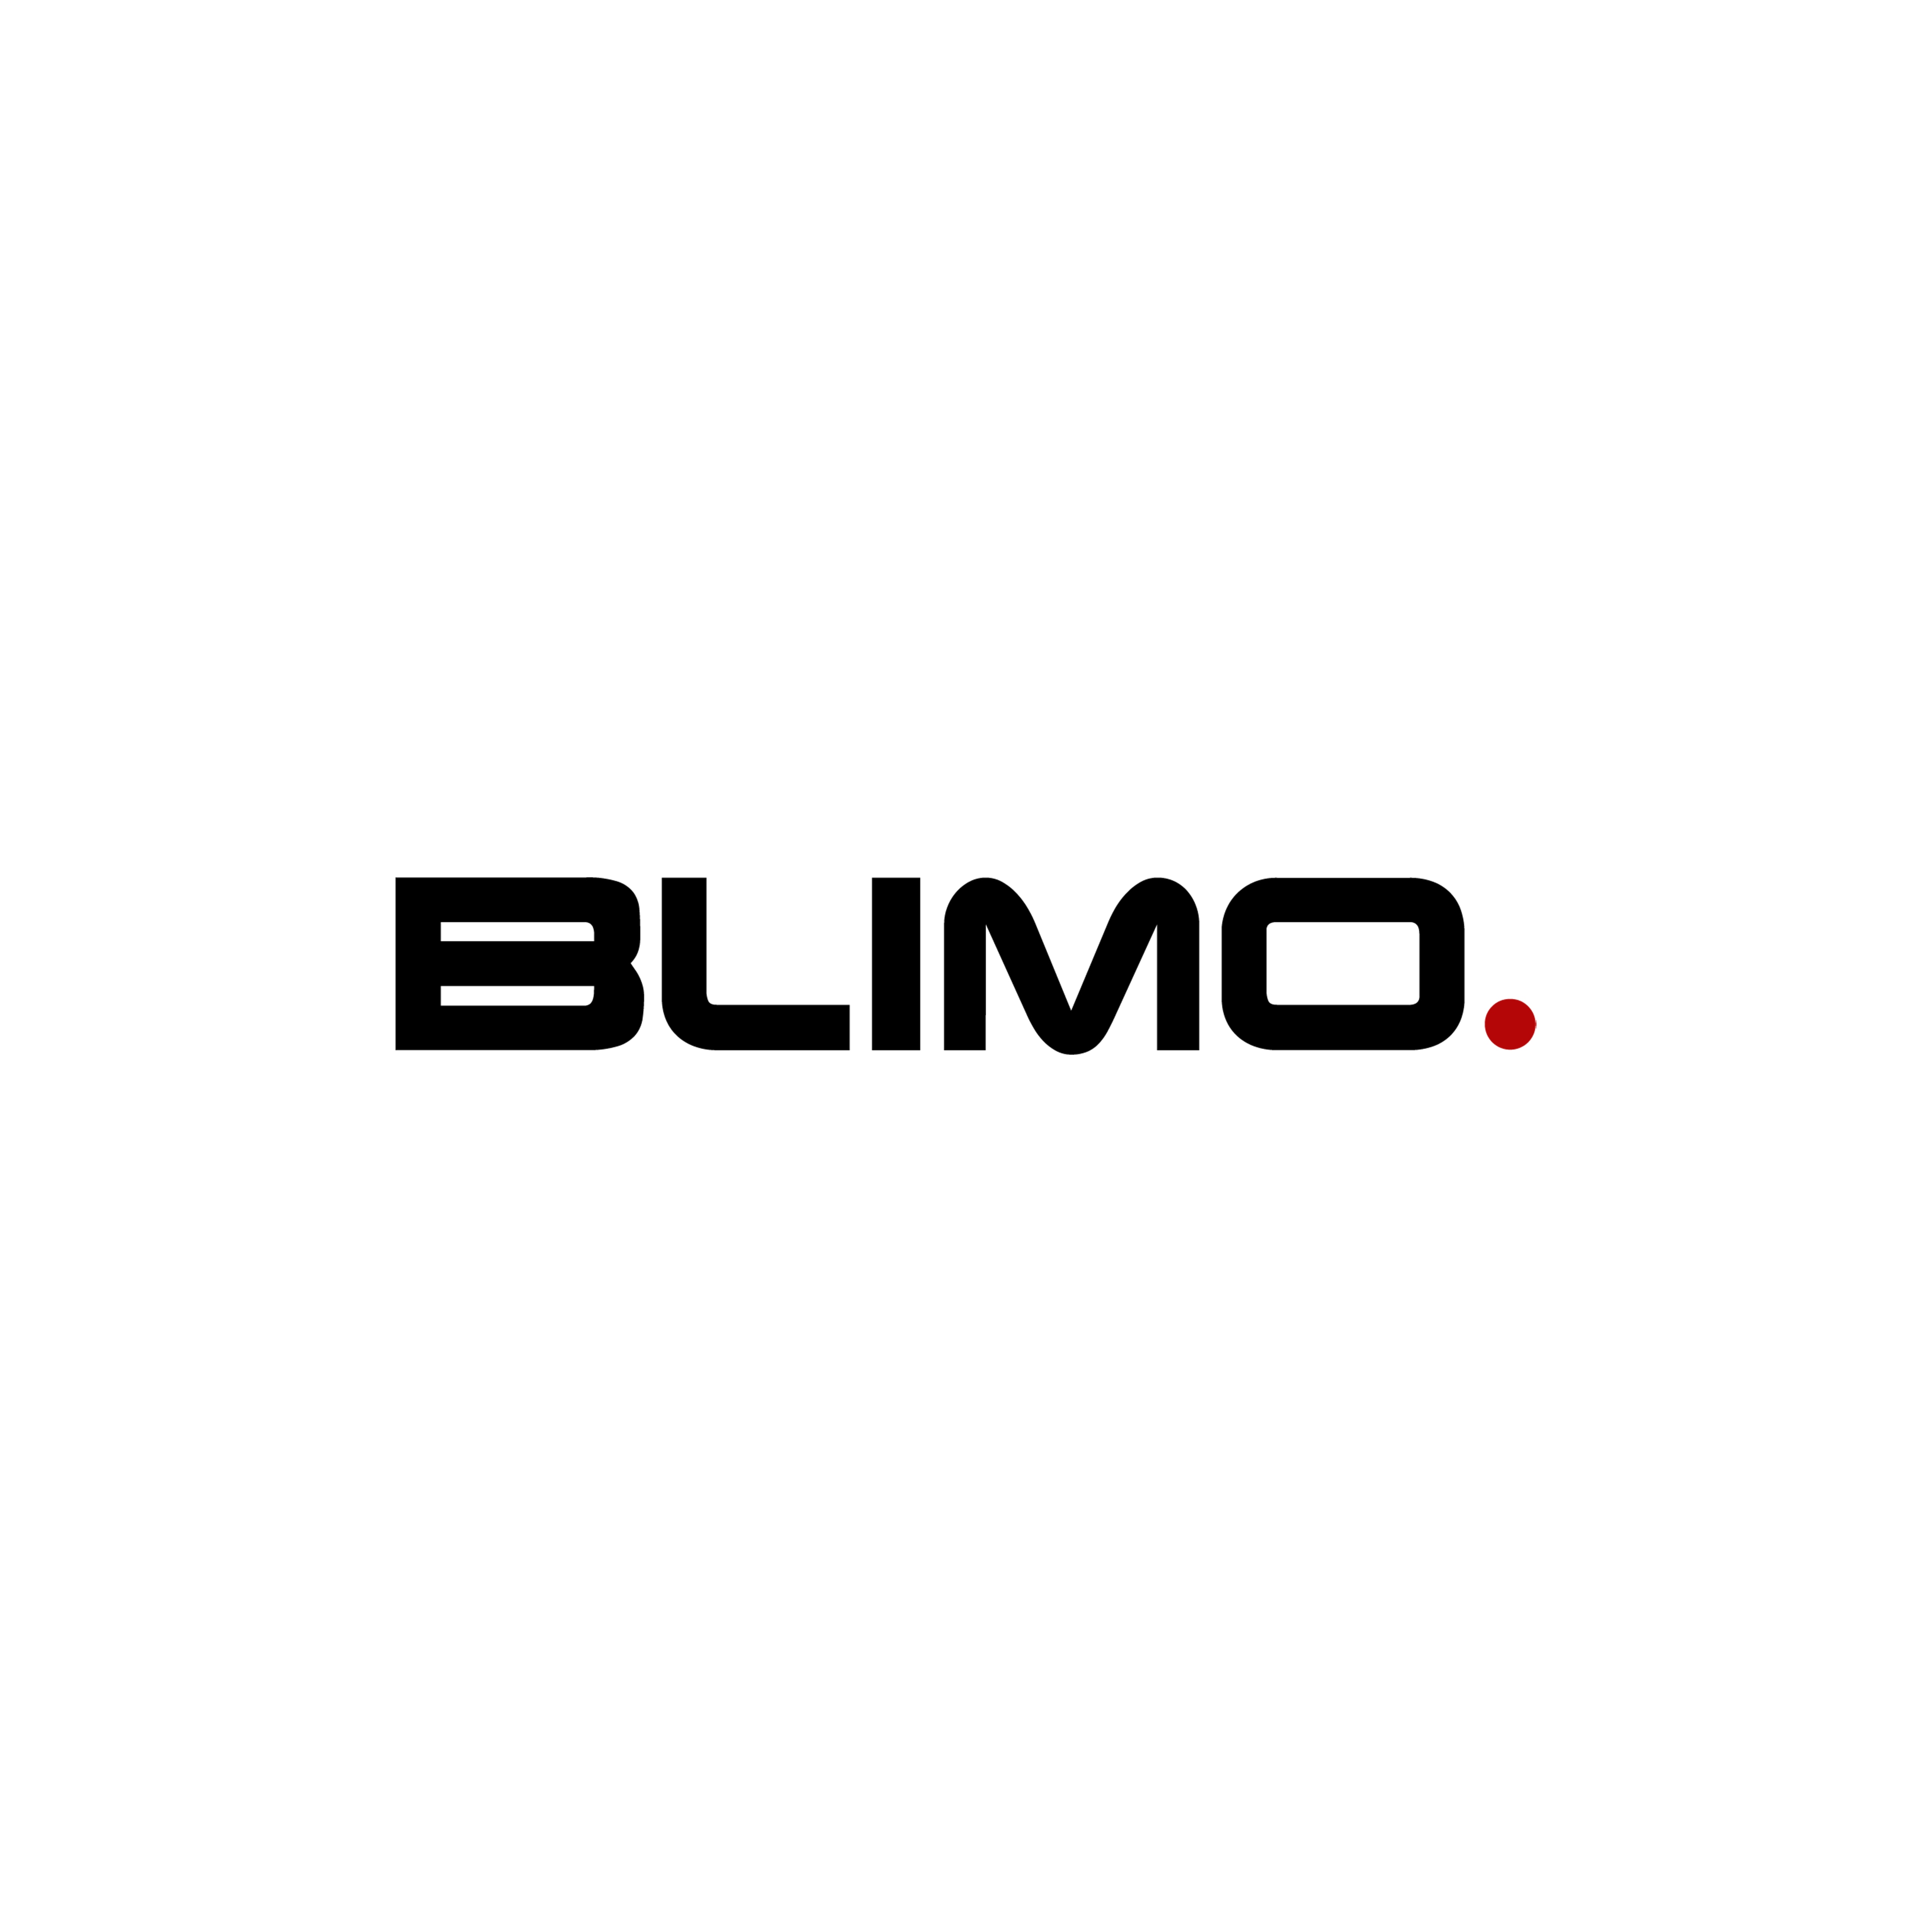 Slange til Blimo Moto, 16x2,5